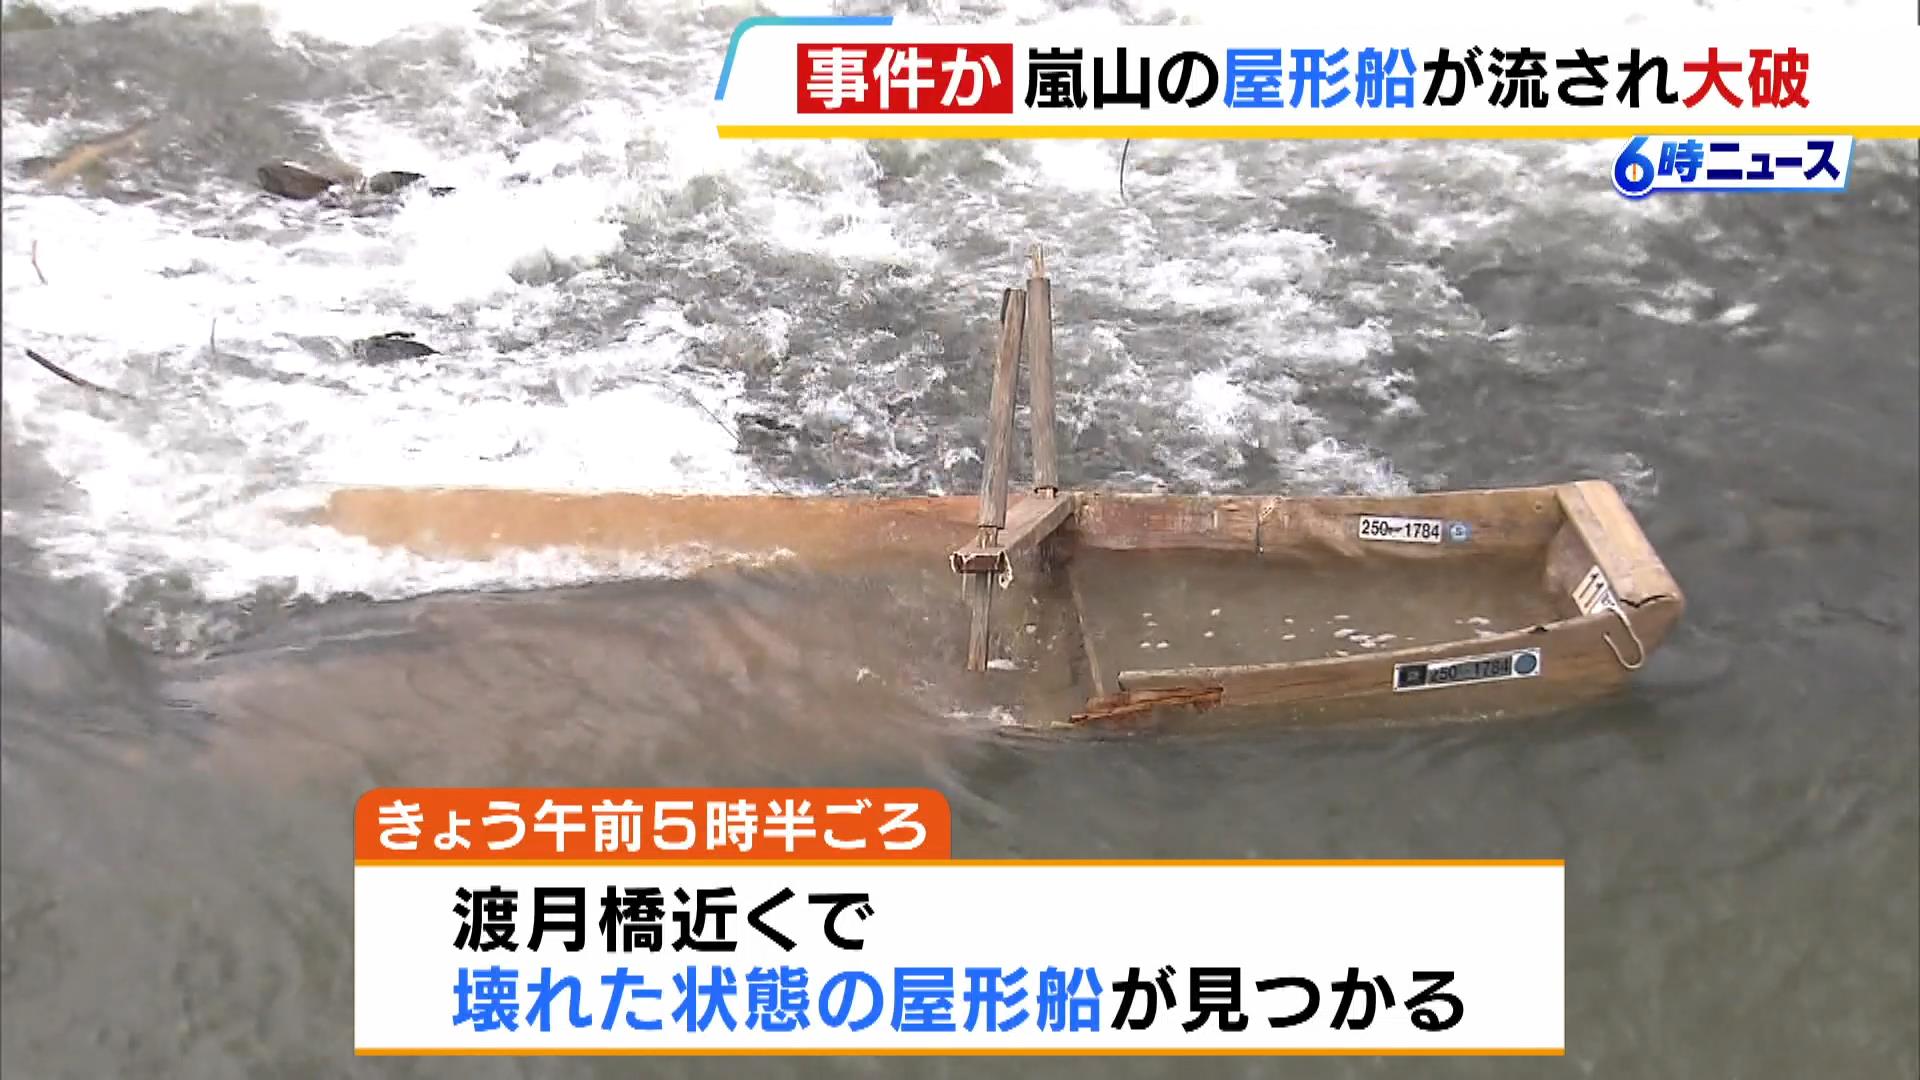 「怒りよりも呆れ…誰がこんなんするんやろ」京都・嵐山の屋形船が大破「鵜飼い」が１日延期に　警察に被害届提出へ